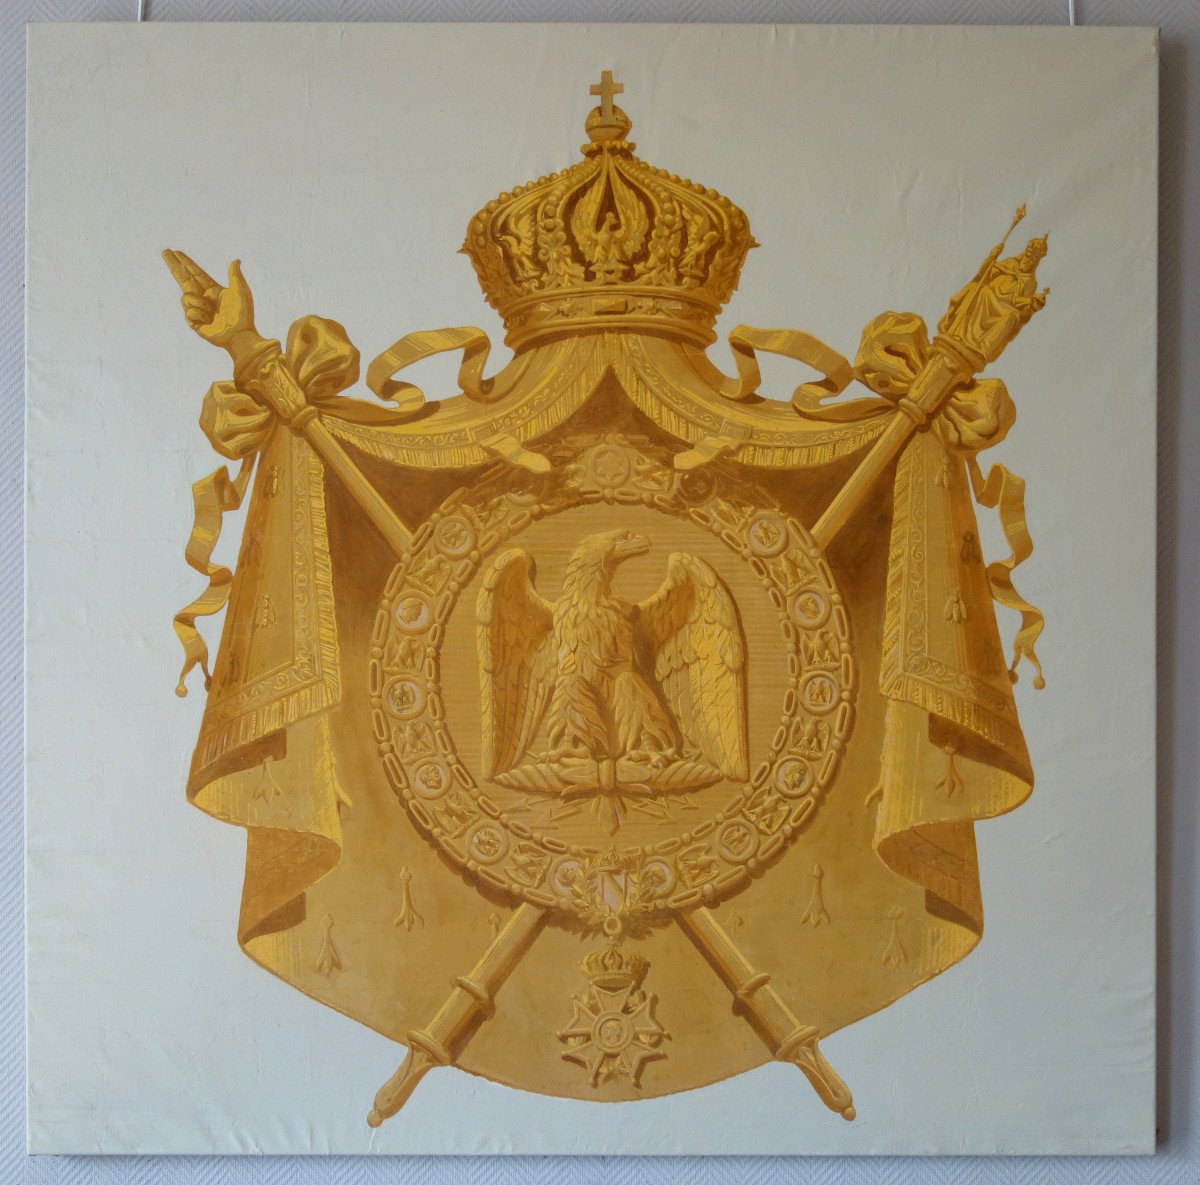 Décoration De Palais Impérial, Les Grandes Armes De Napoleon III - Hst 151cm X 151cm